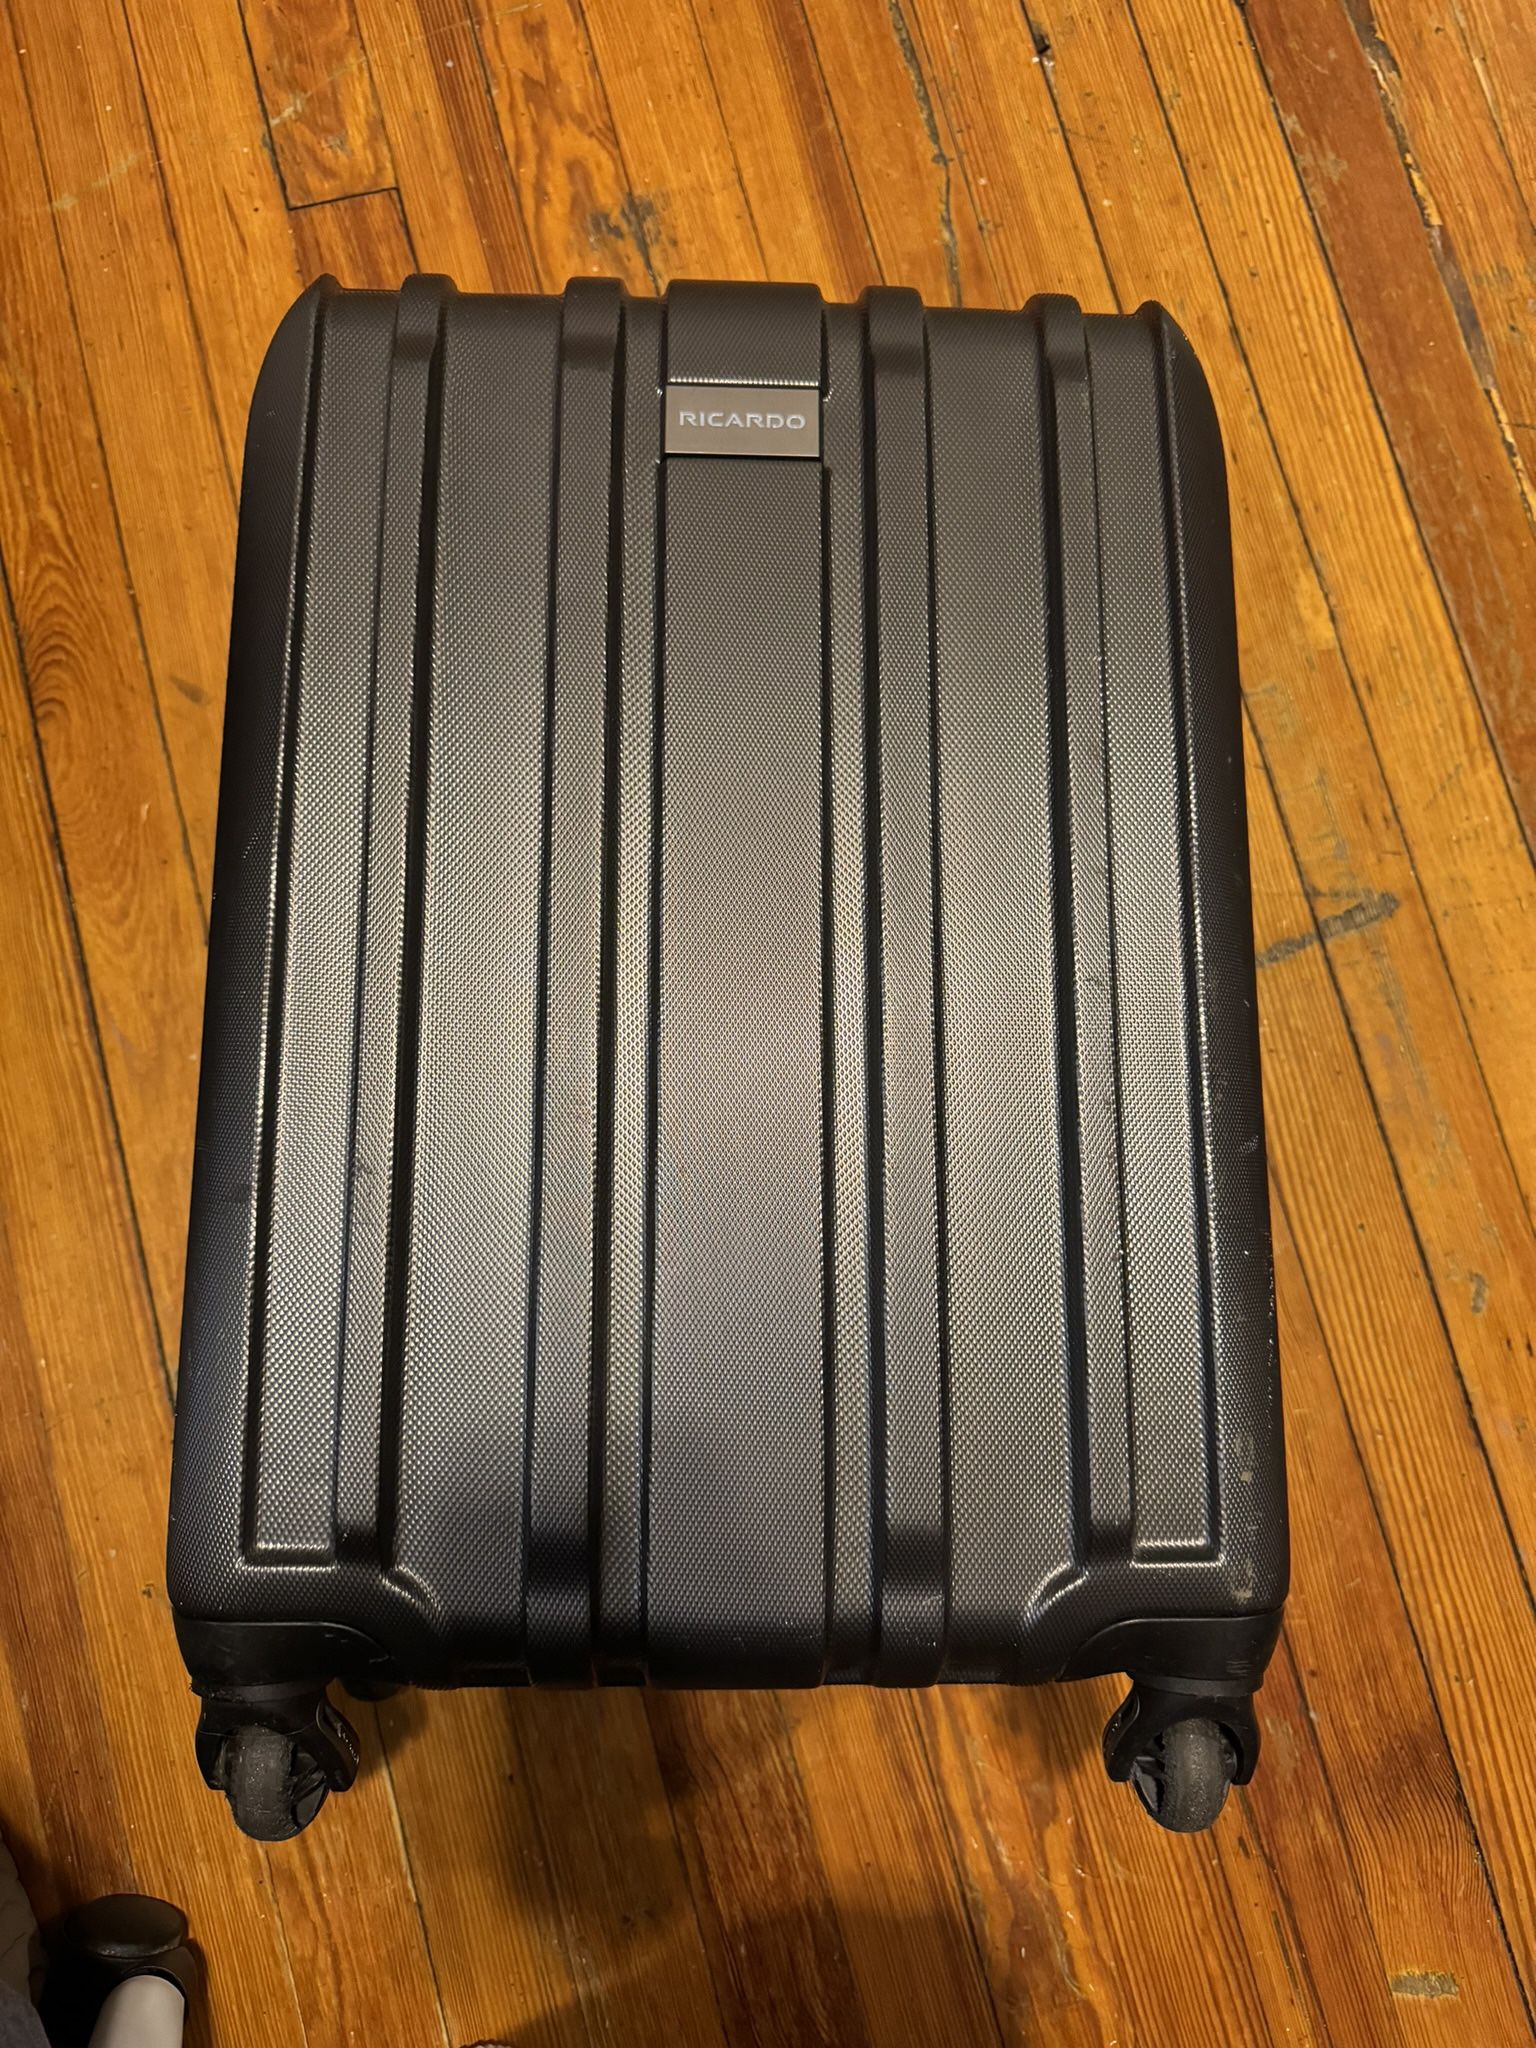 Richardo Suitcase 